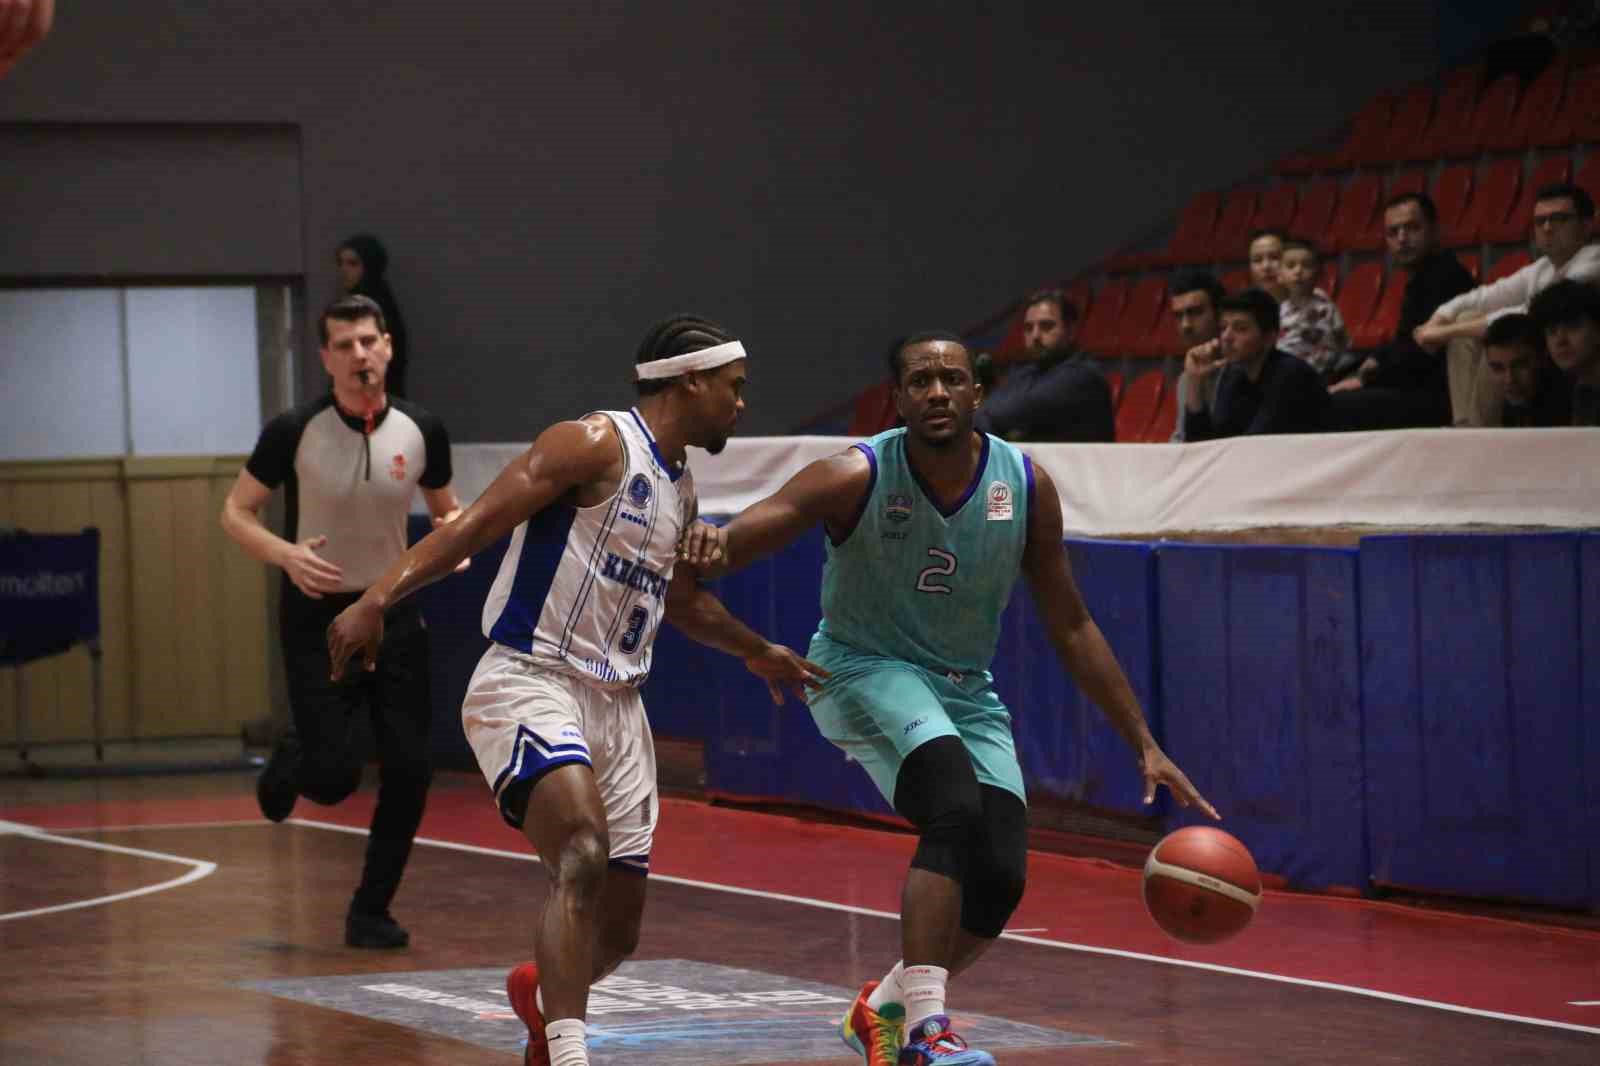 turkiye basketbol ligi kocaeli bsb kagitspor 99 cayirova belediyesi 106 6 7ijCwfbZ